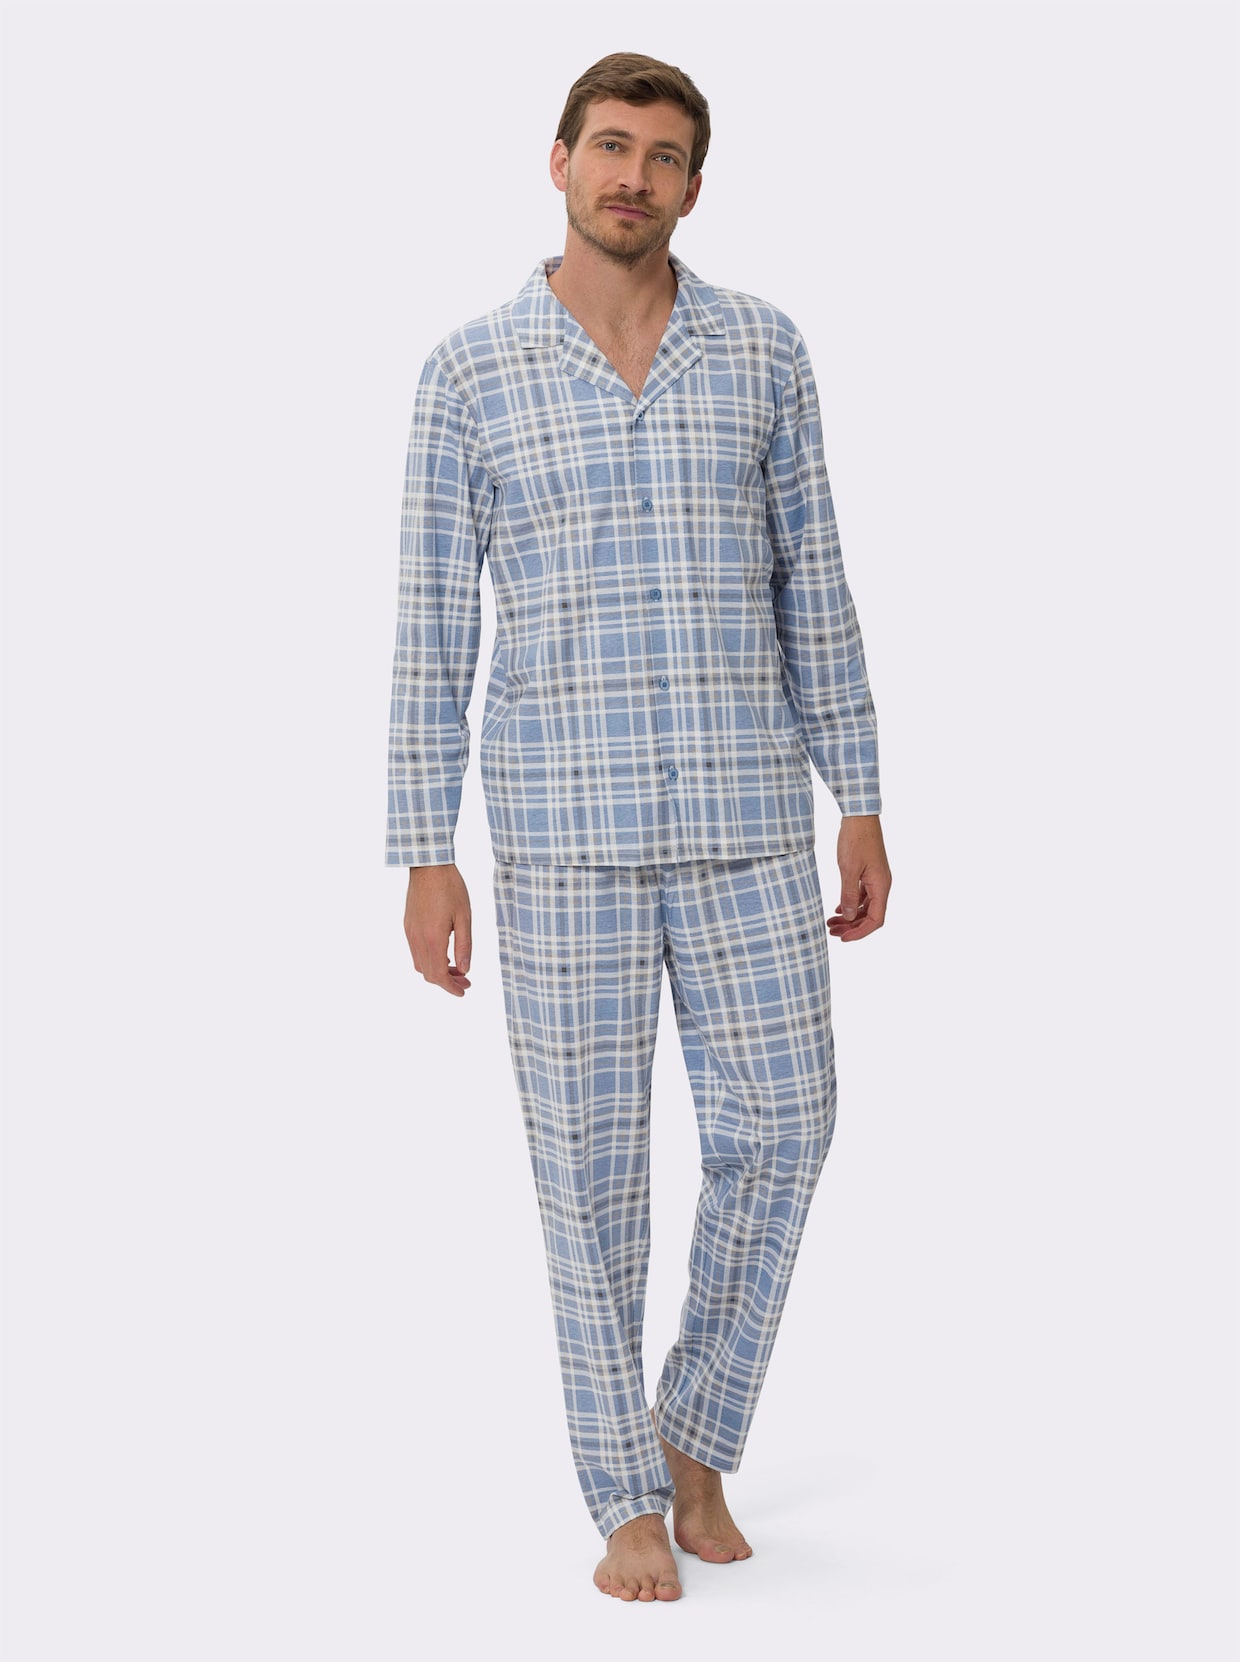 Pyjamas - blekblå-ecru, rutig